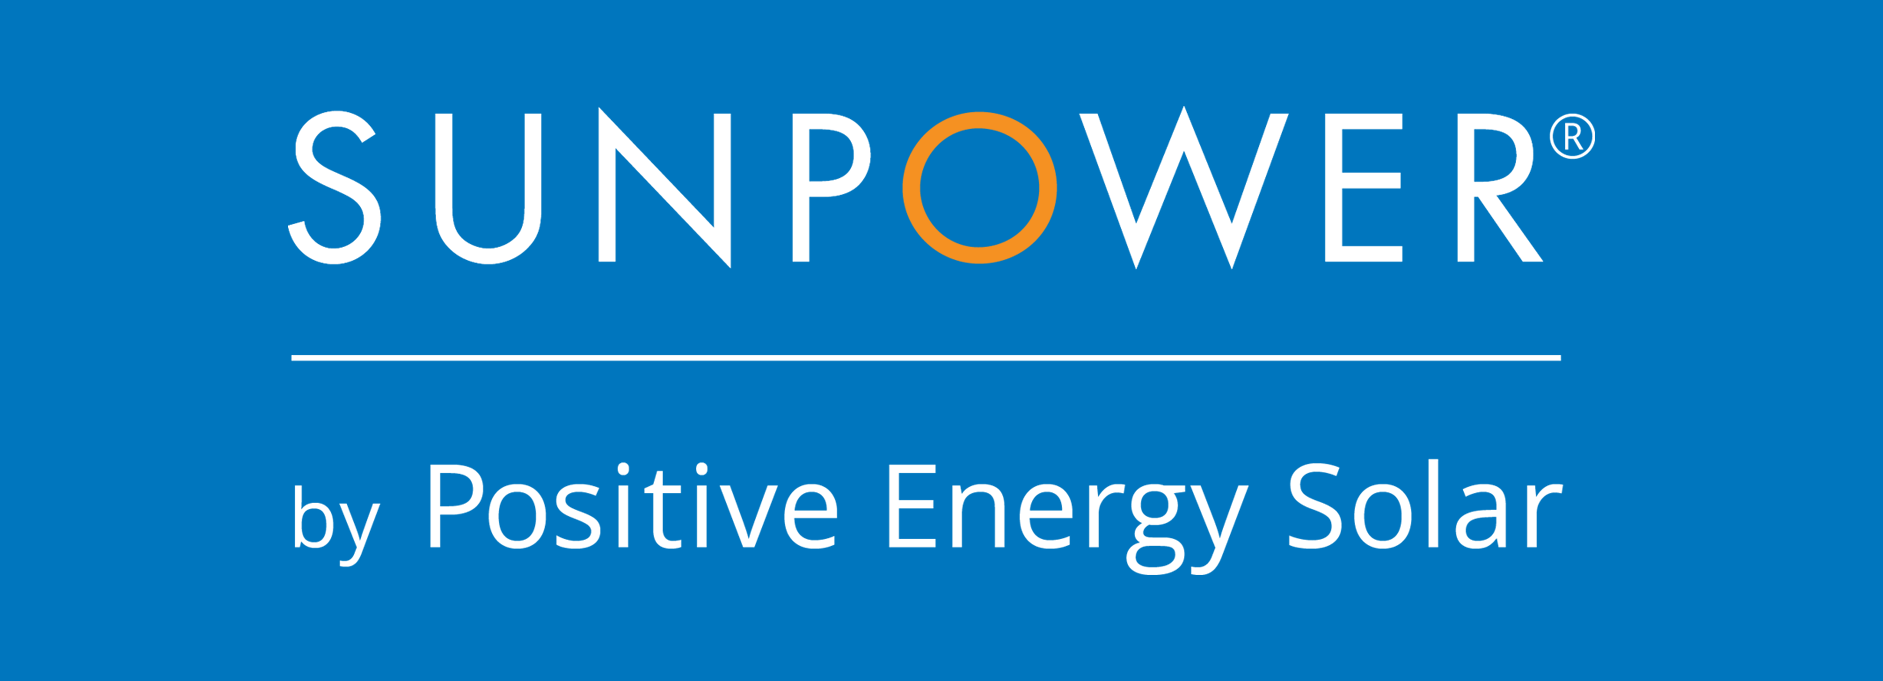 SunPower Logo - Sunpower logo